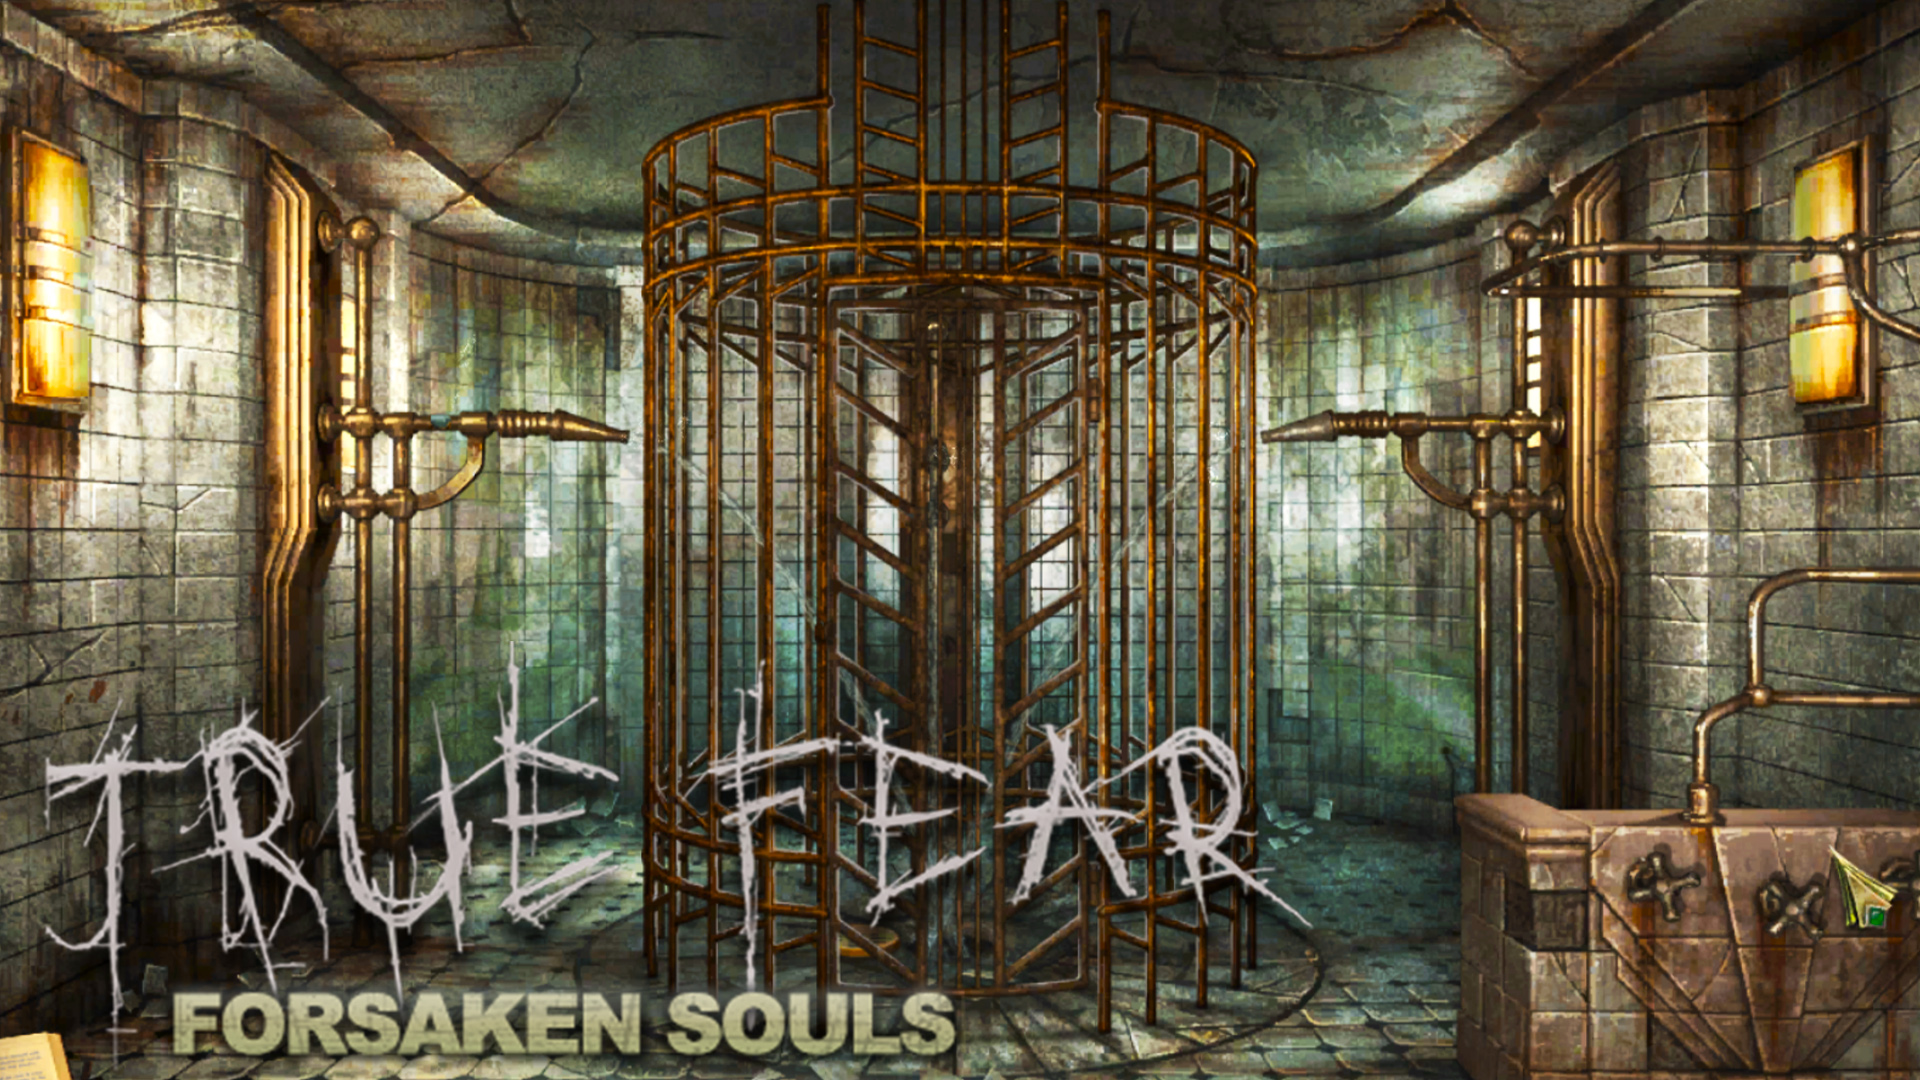 True forsaken souls 1. Игра true Fear. True Fear: Forsaken Souls Part 2. Тру Фир Форсакен соулс.